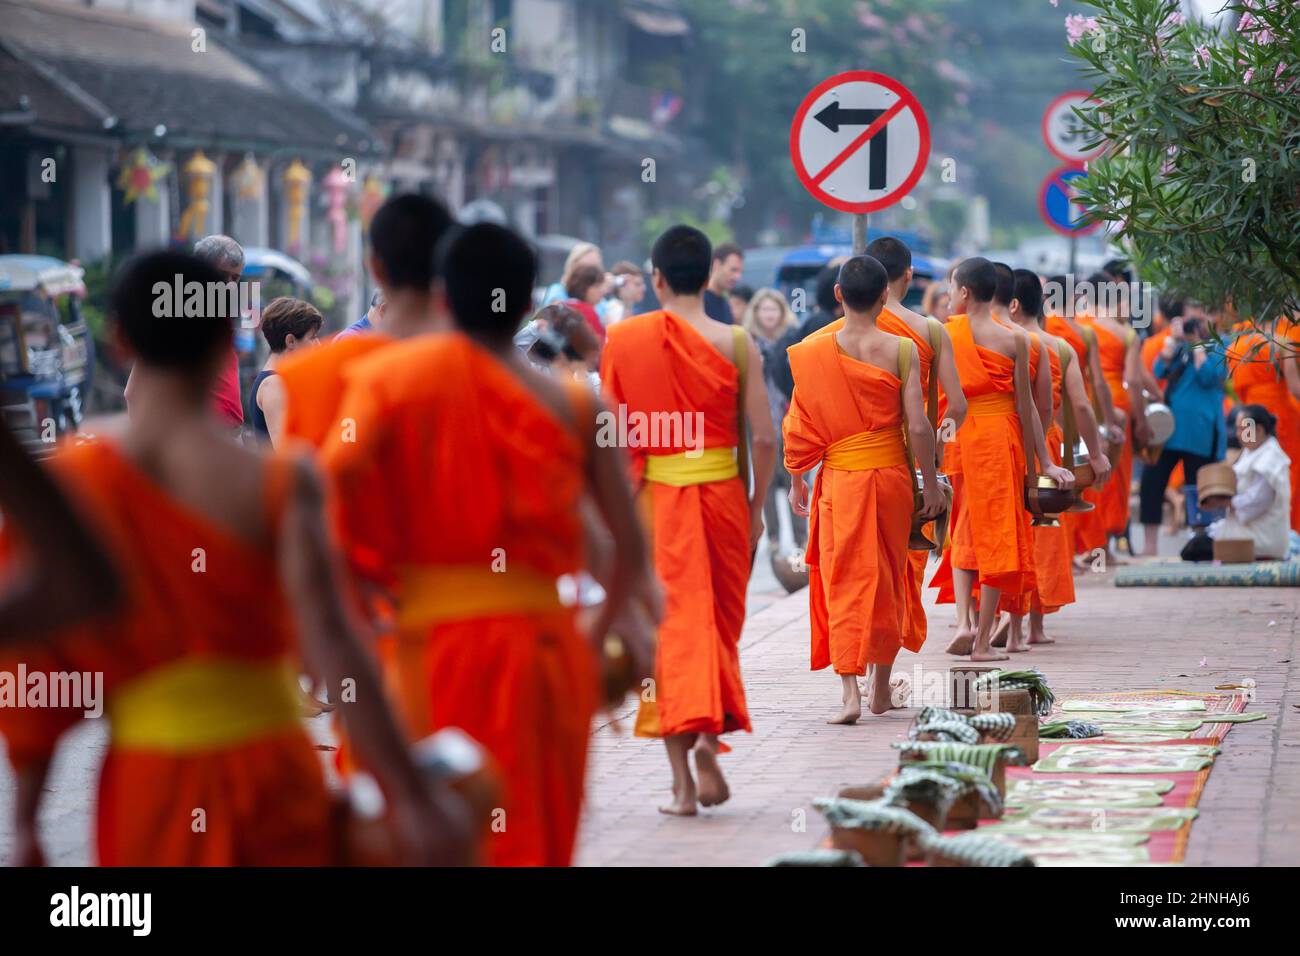 Les touristes prennent des photos de moines bouddhistes avec des cérémonies de remise d'alms bouddhistes dans la rue le matin. Luang Prabang, Laos. Banque D'Images